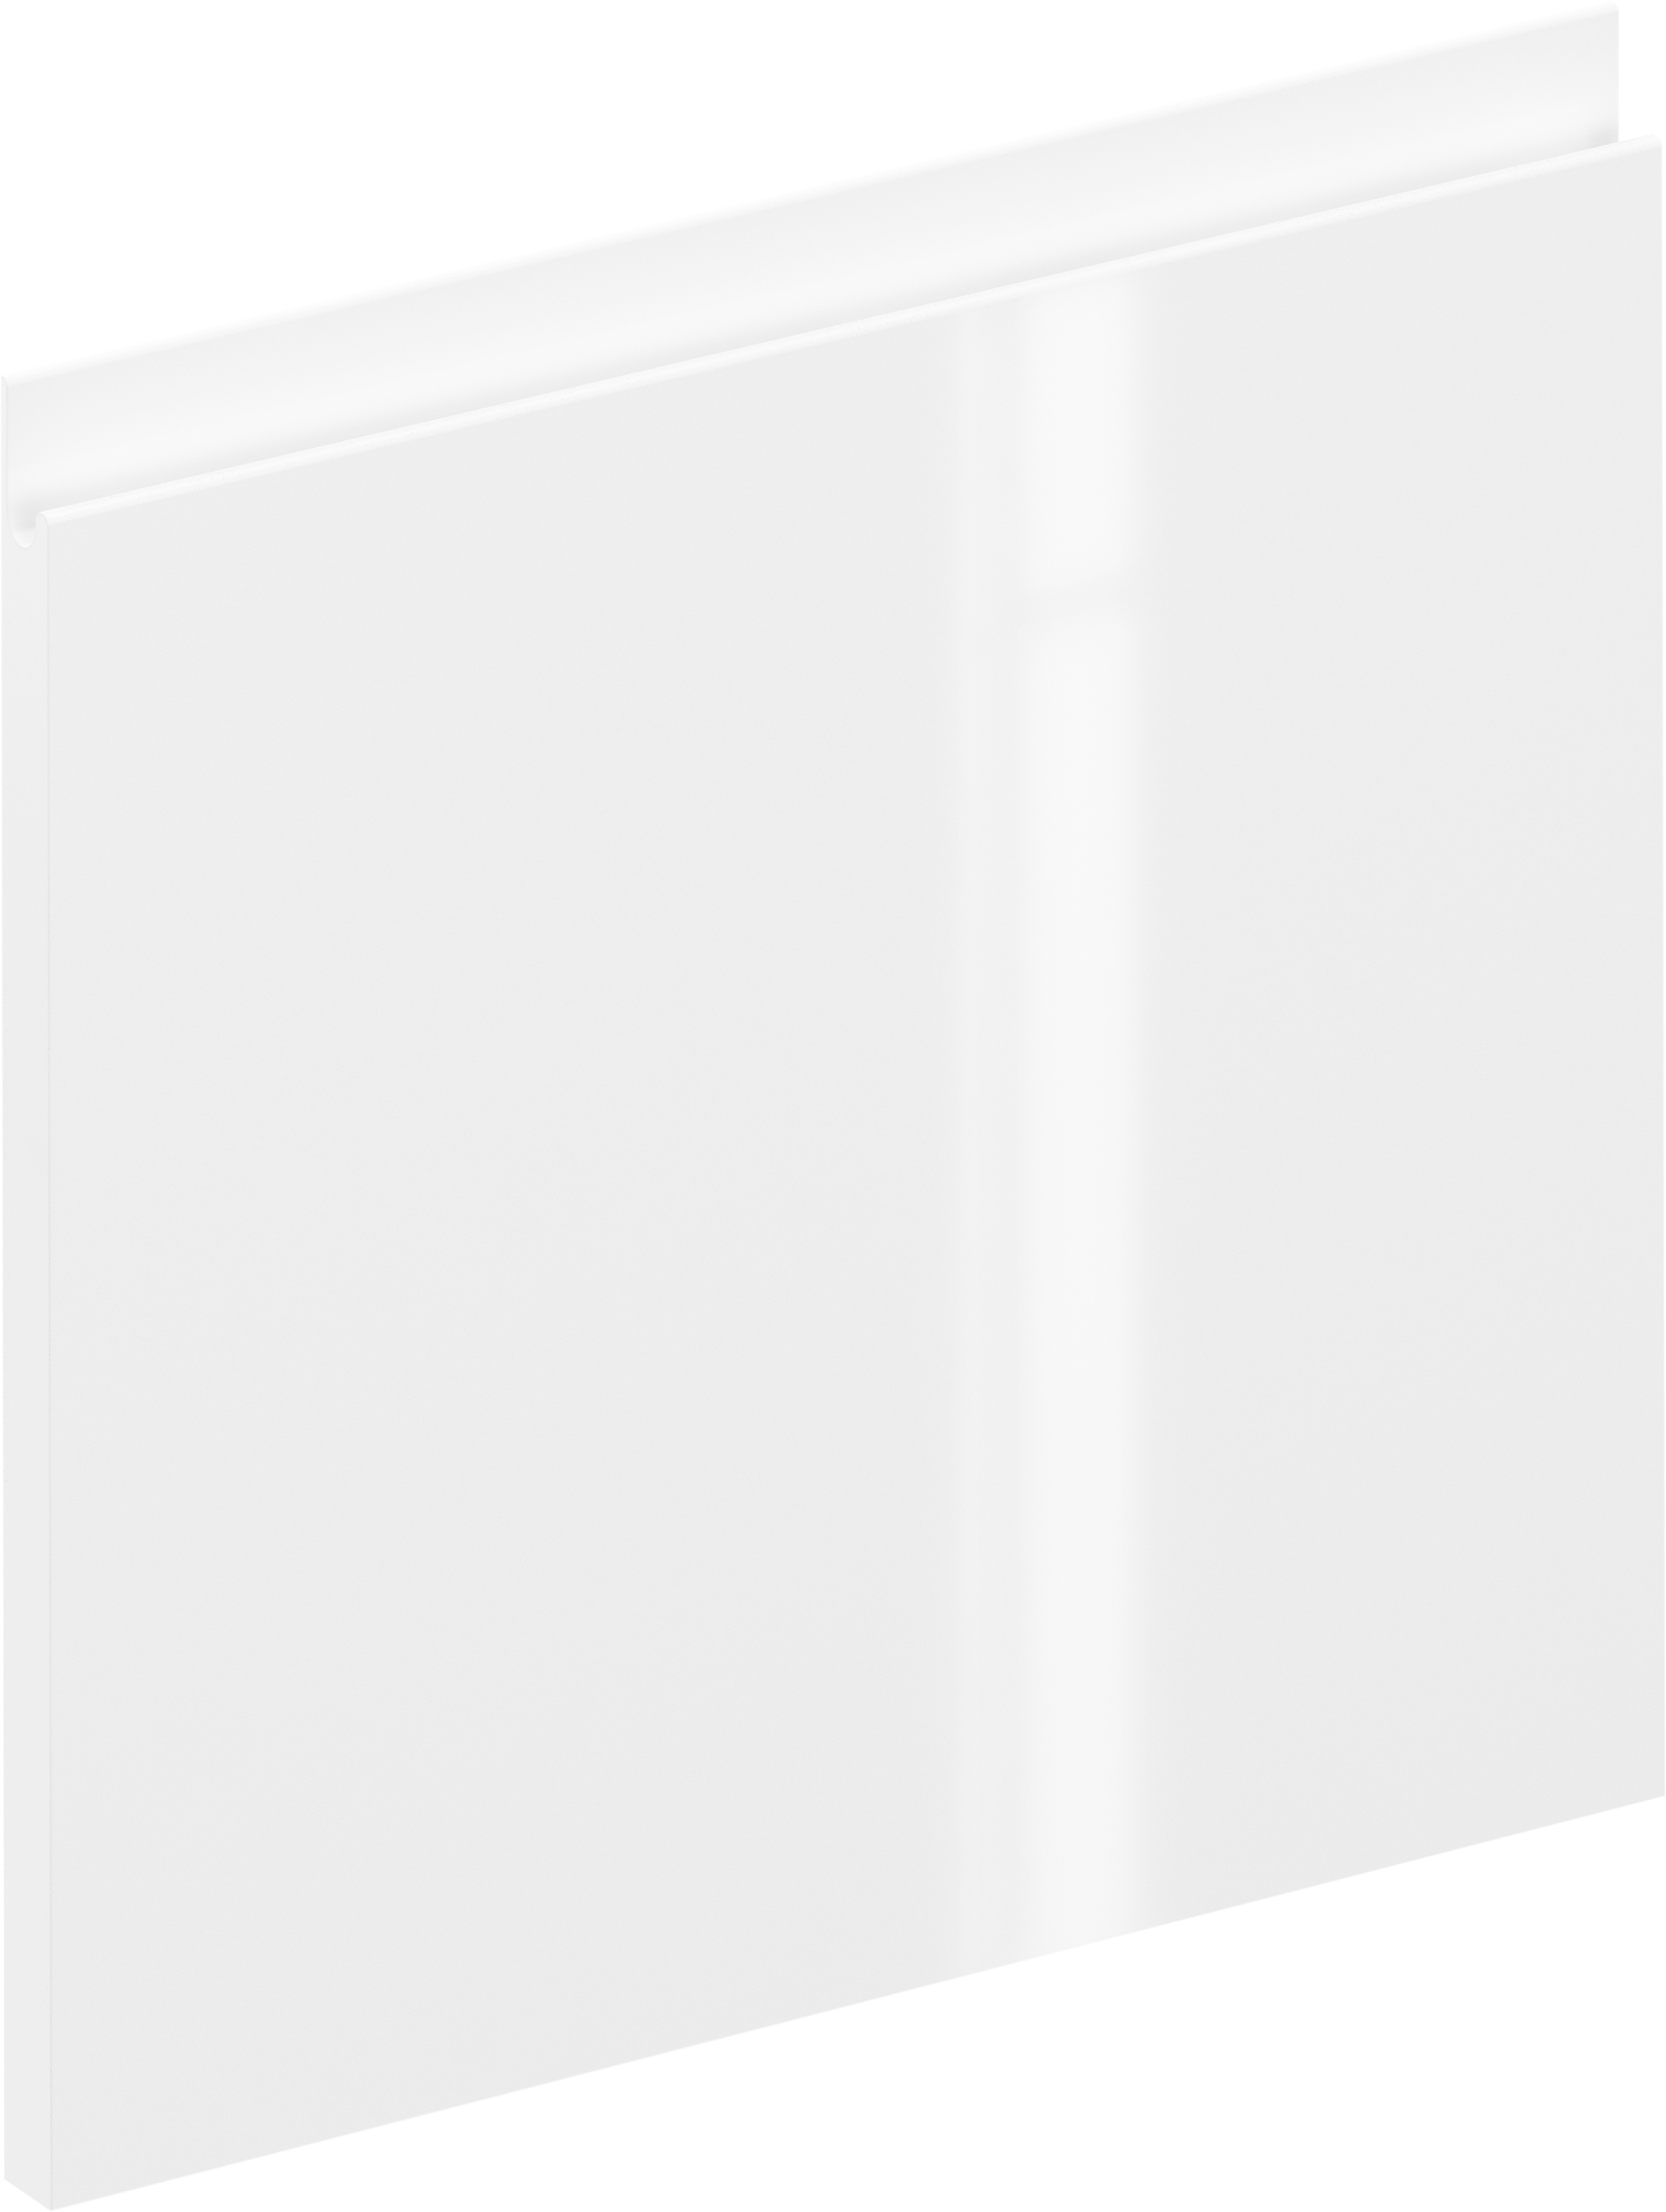 Frente de cajón de cocina tokyo blanco brillo h 38.4 x l 40 cm